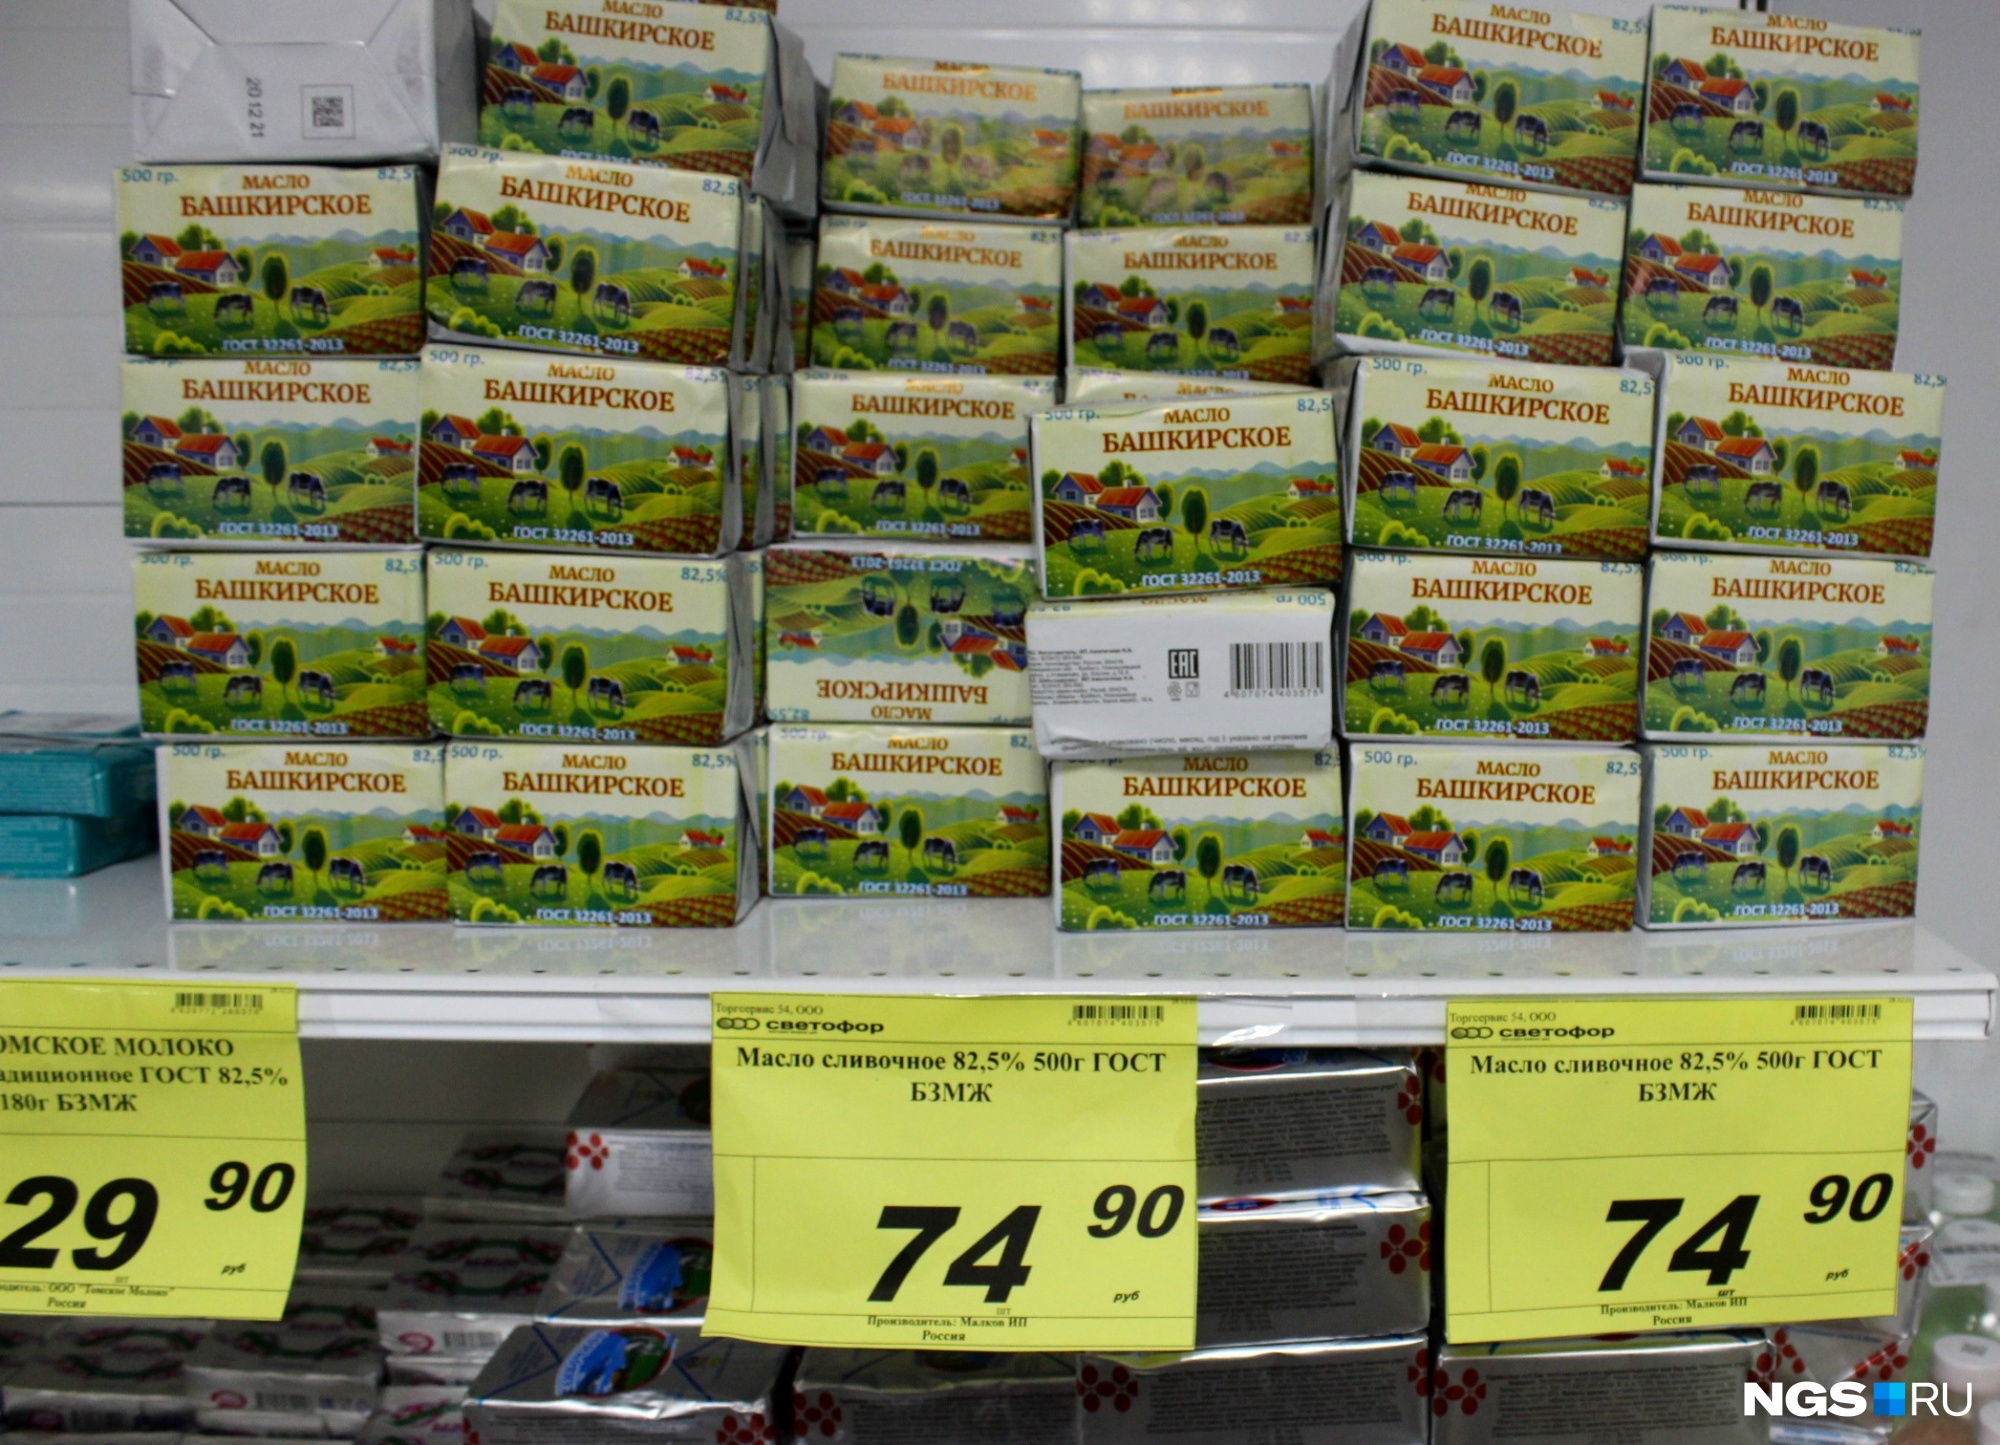 «Башкирское масло», сделанное якобы из молочного жира, которое стоит как самый дешевый маргарин